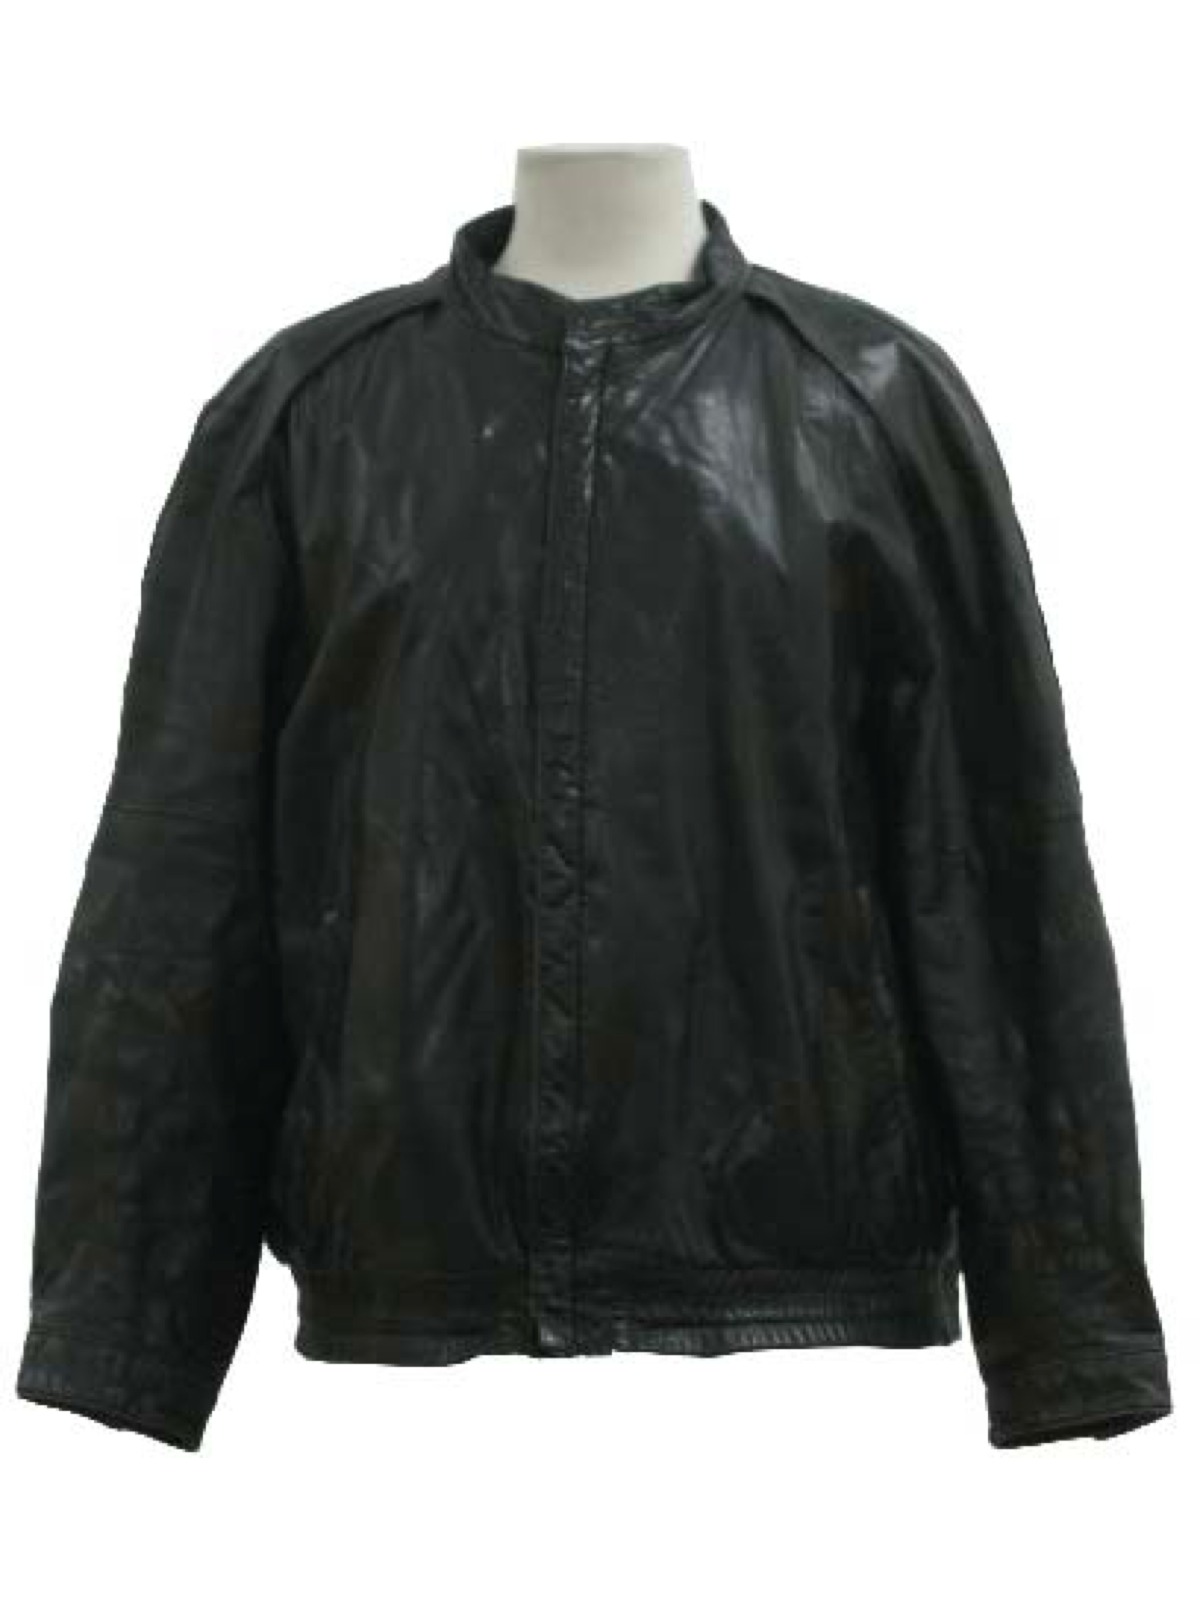 Retro 1980's Leather Jacket (Wilson) : 80s -Wilson- Unisex black ...